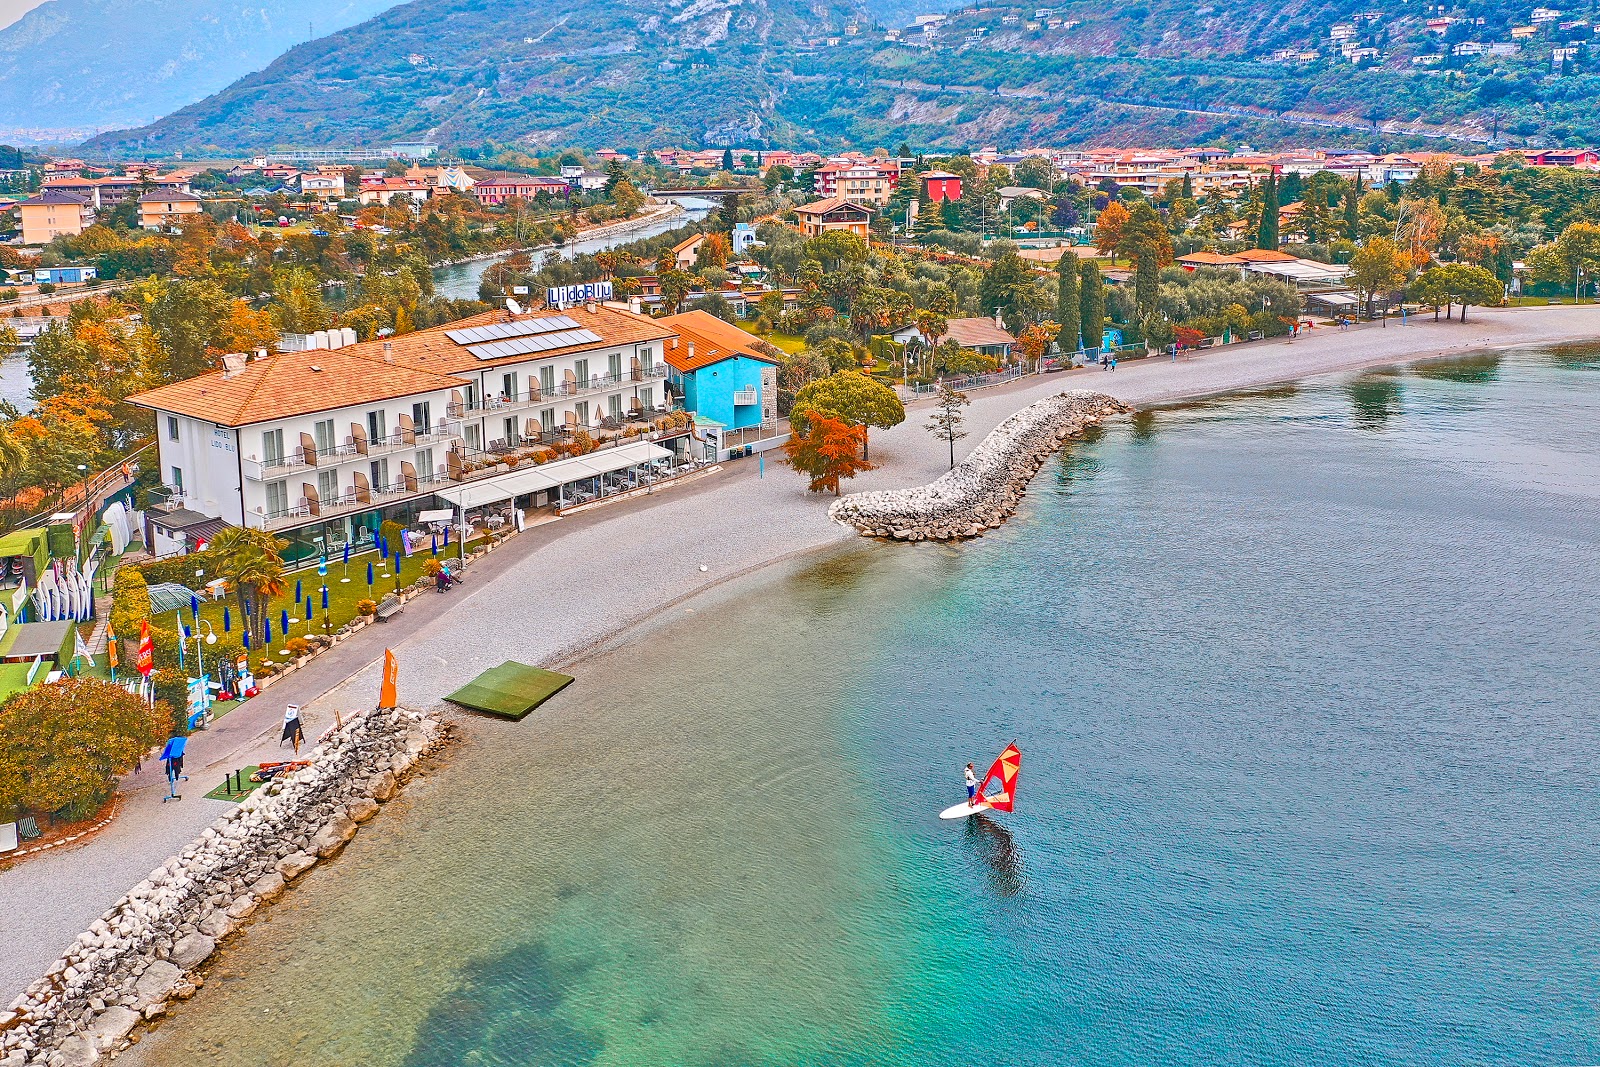 Foto de Spiaggia di Torbole com alto nível de limpeza